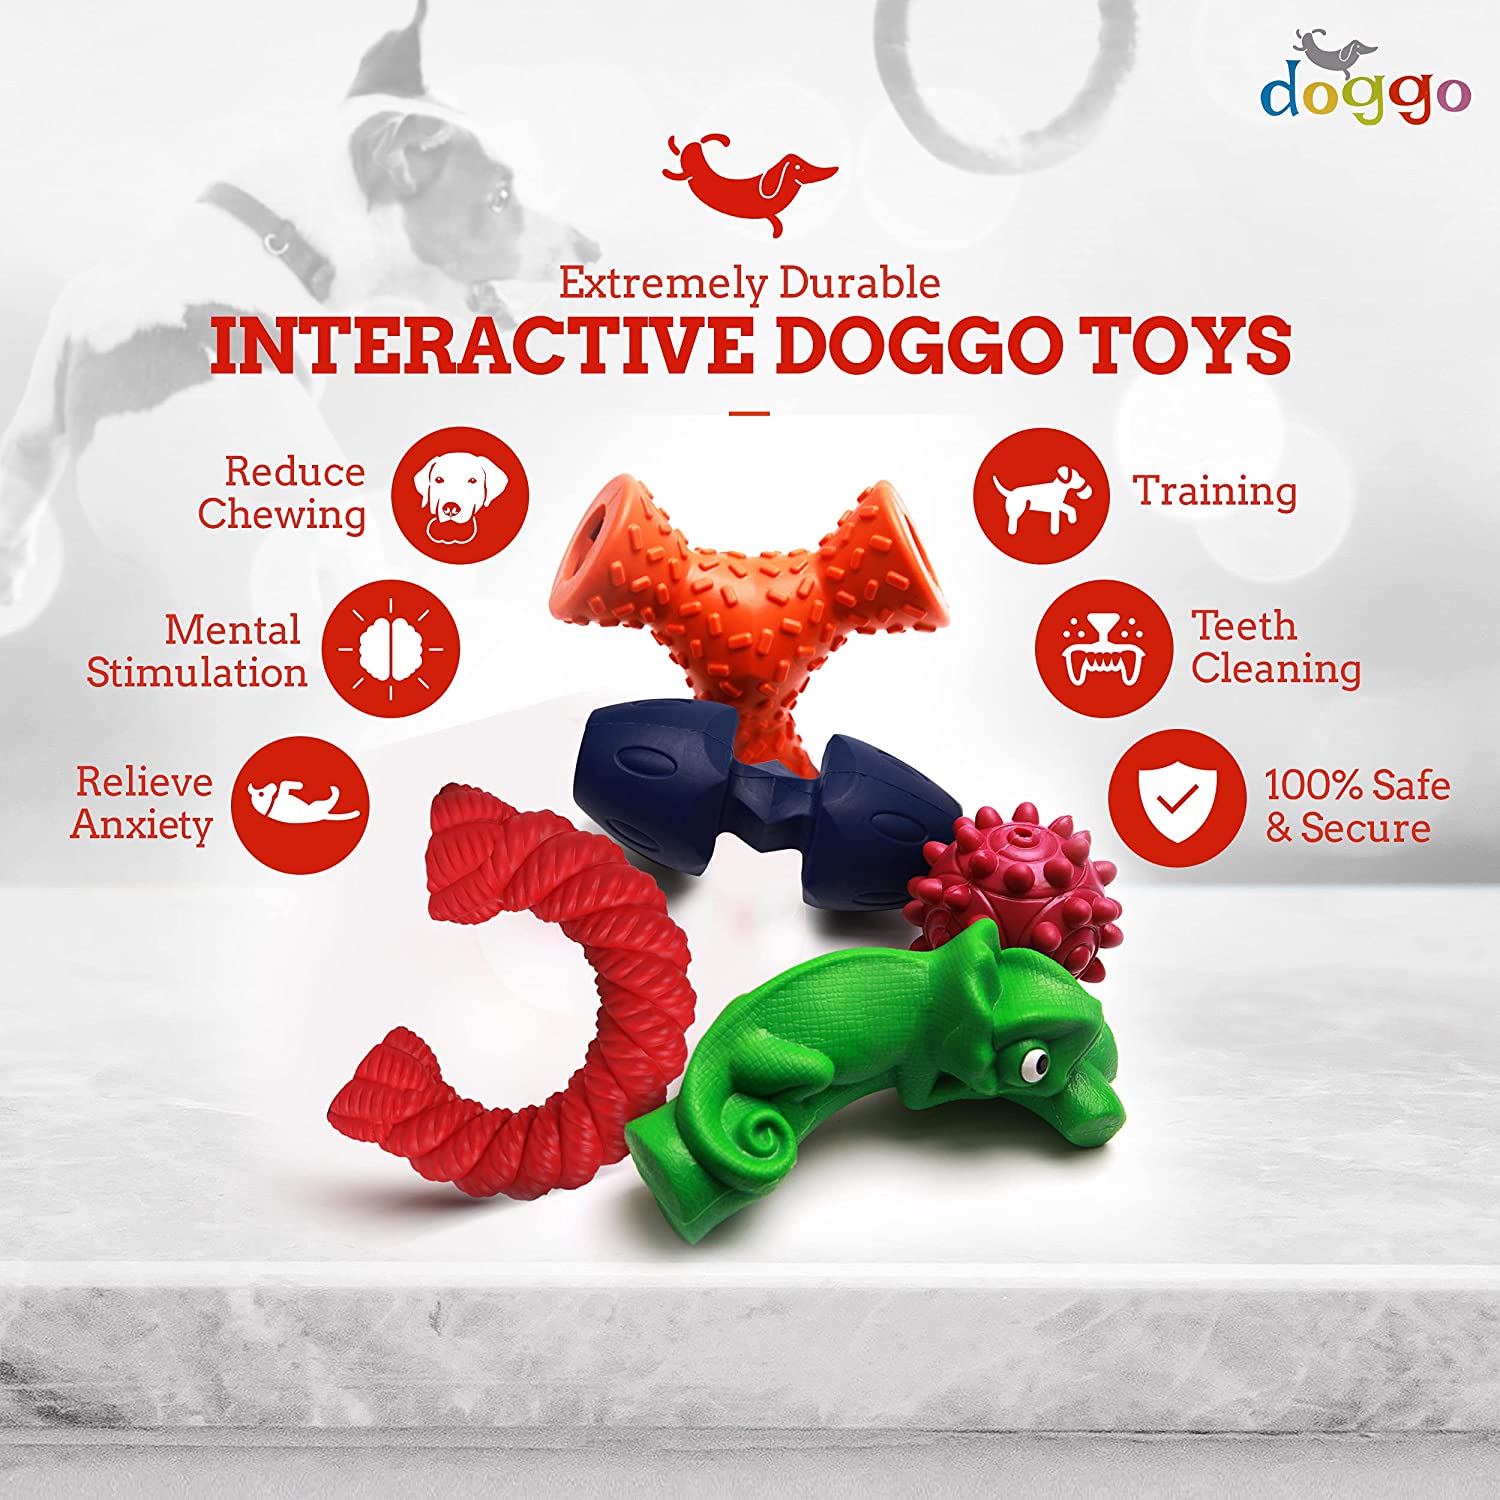 Interactive Doggo toys